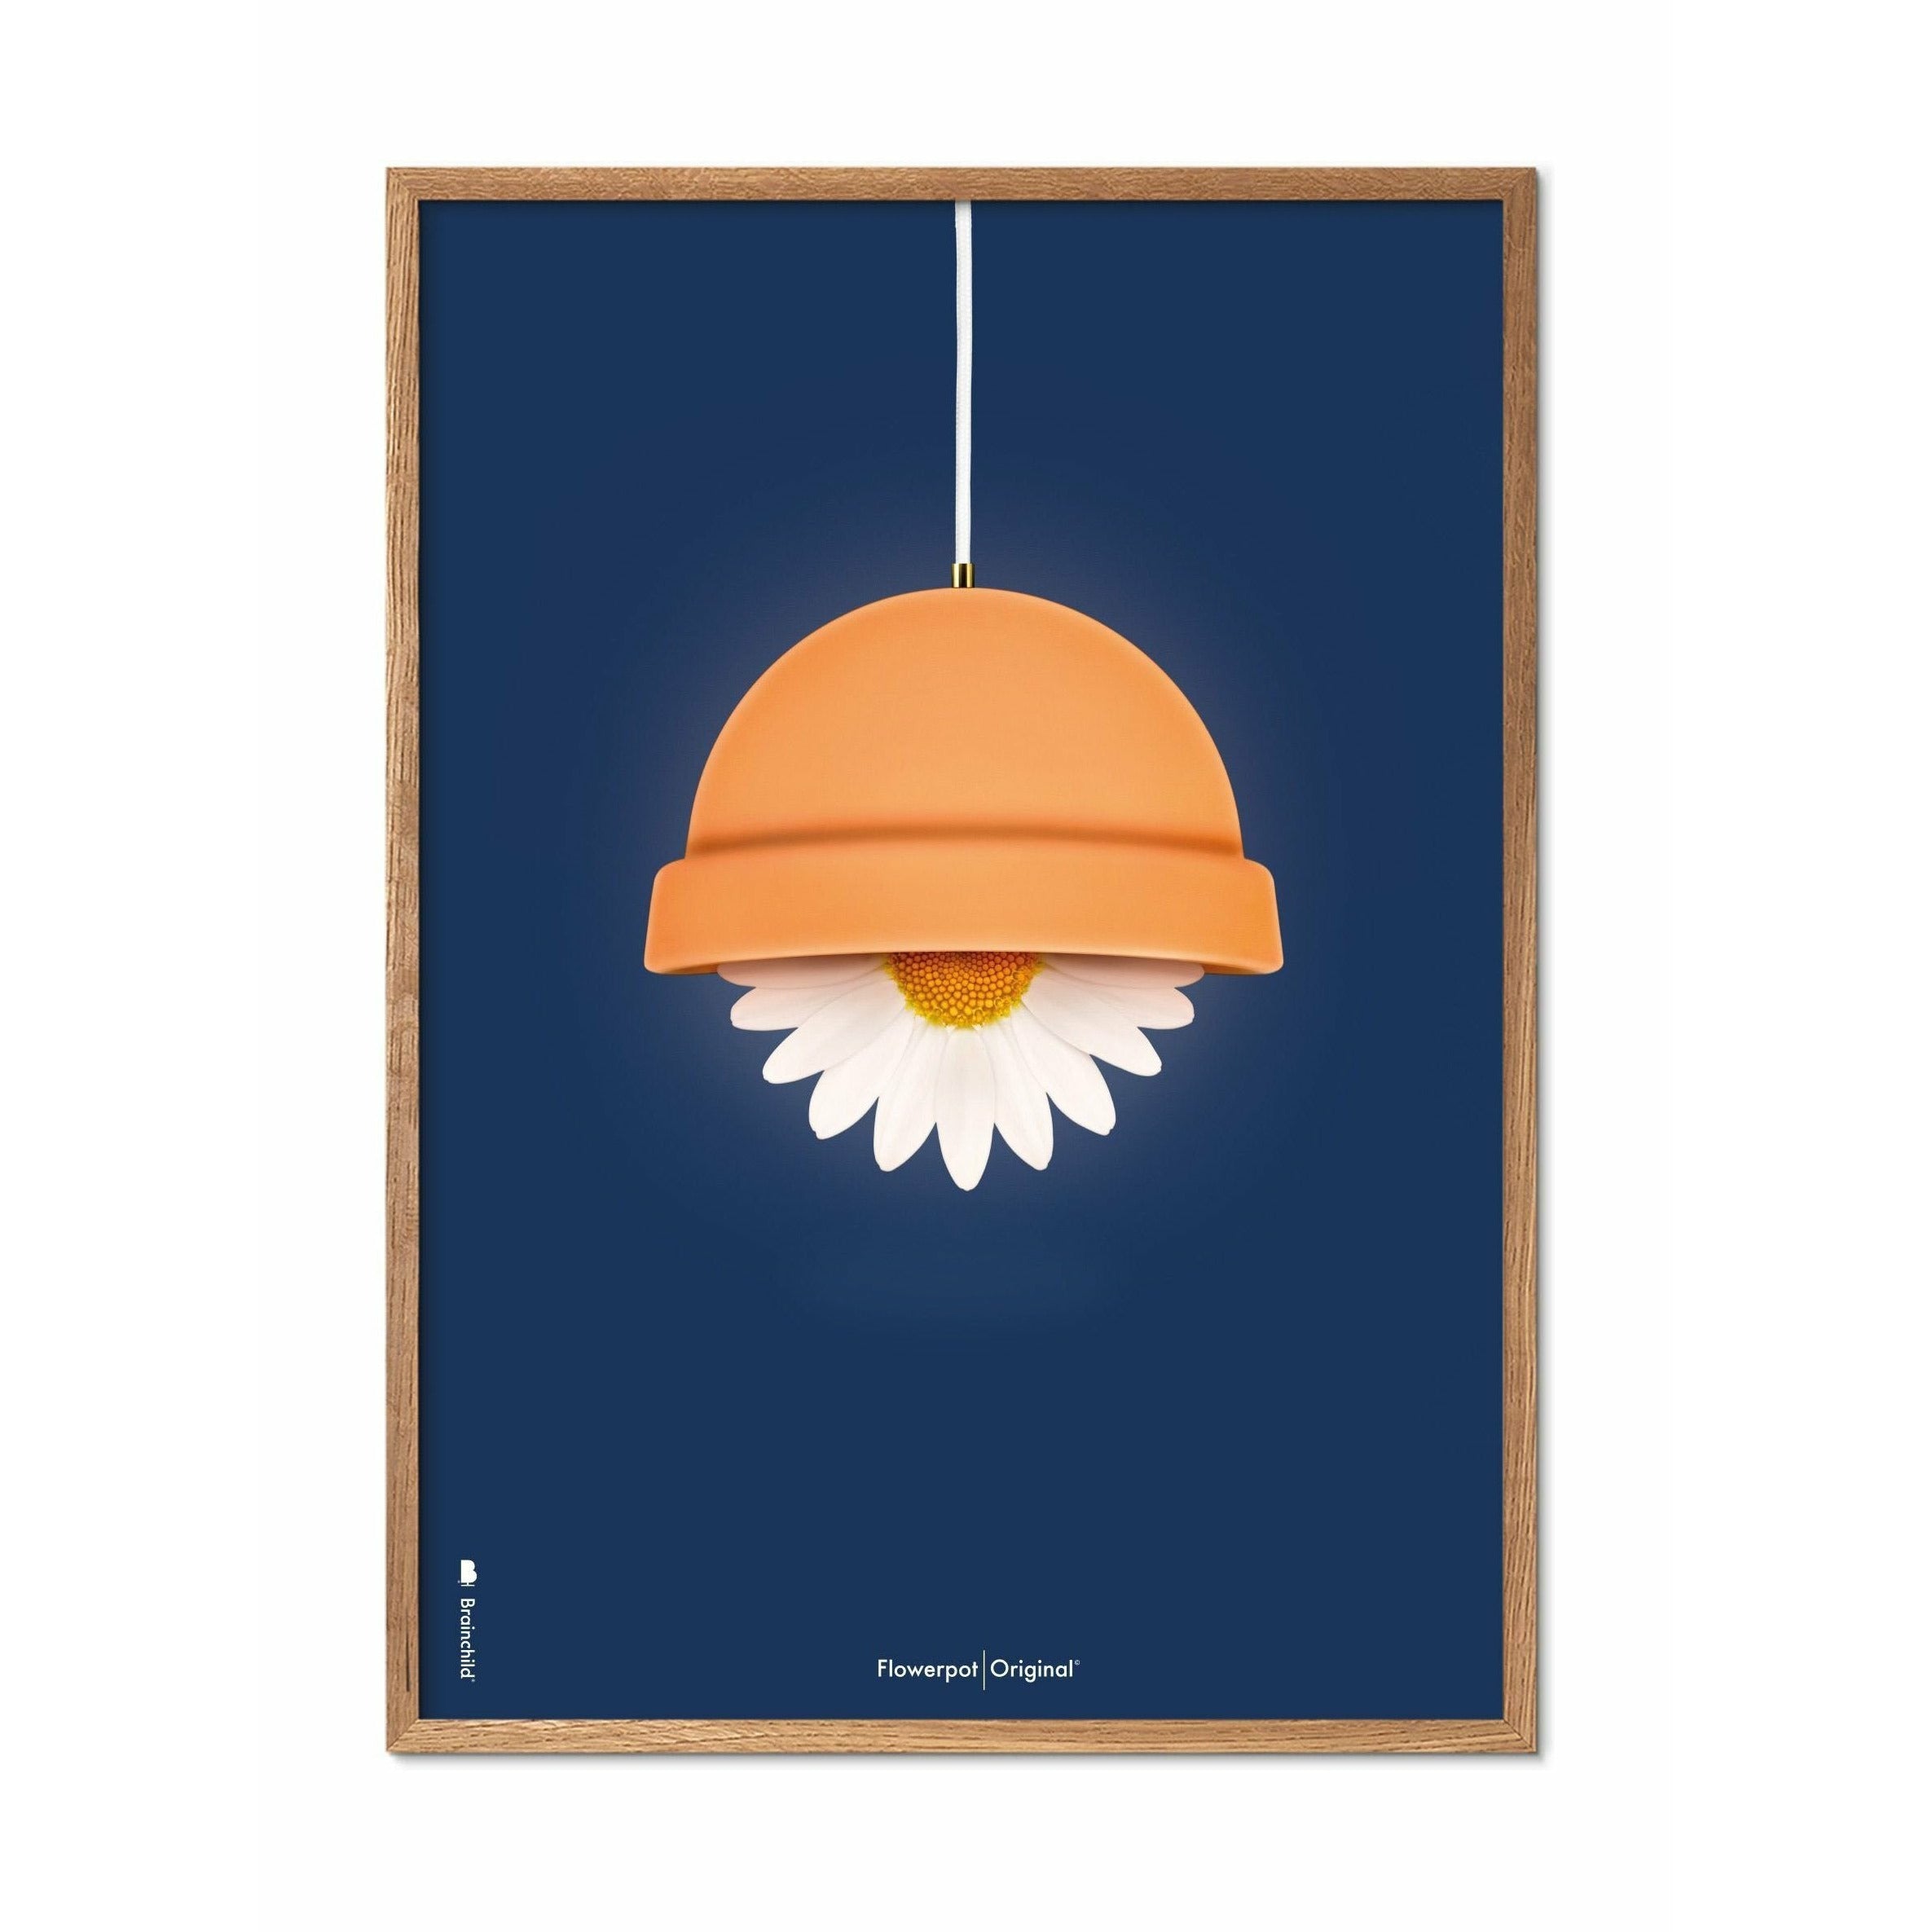 Brainchild Blumentopf Classic Poster, Rahmen aus hellem Holz 50x70 Cm, dunkelblauer Hintergrund